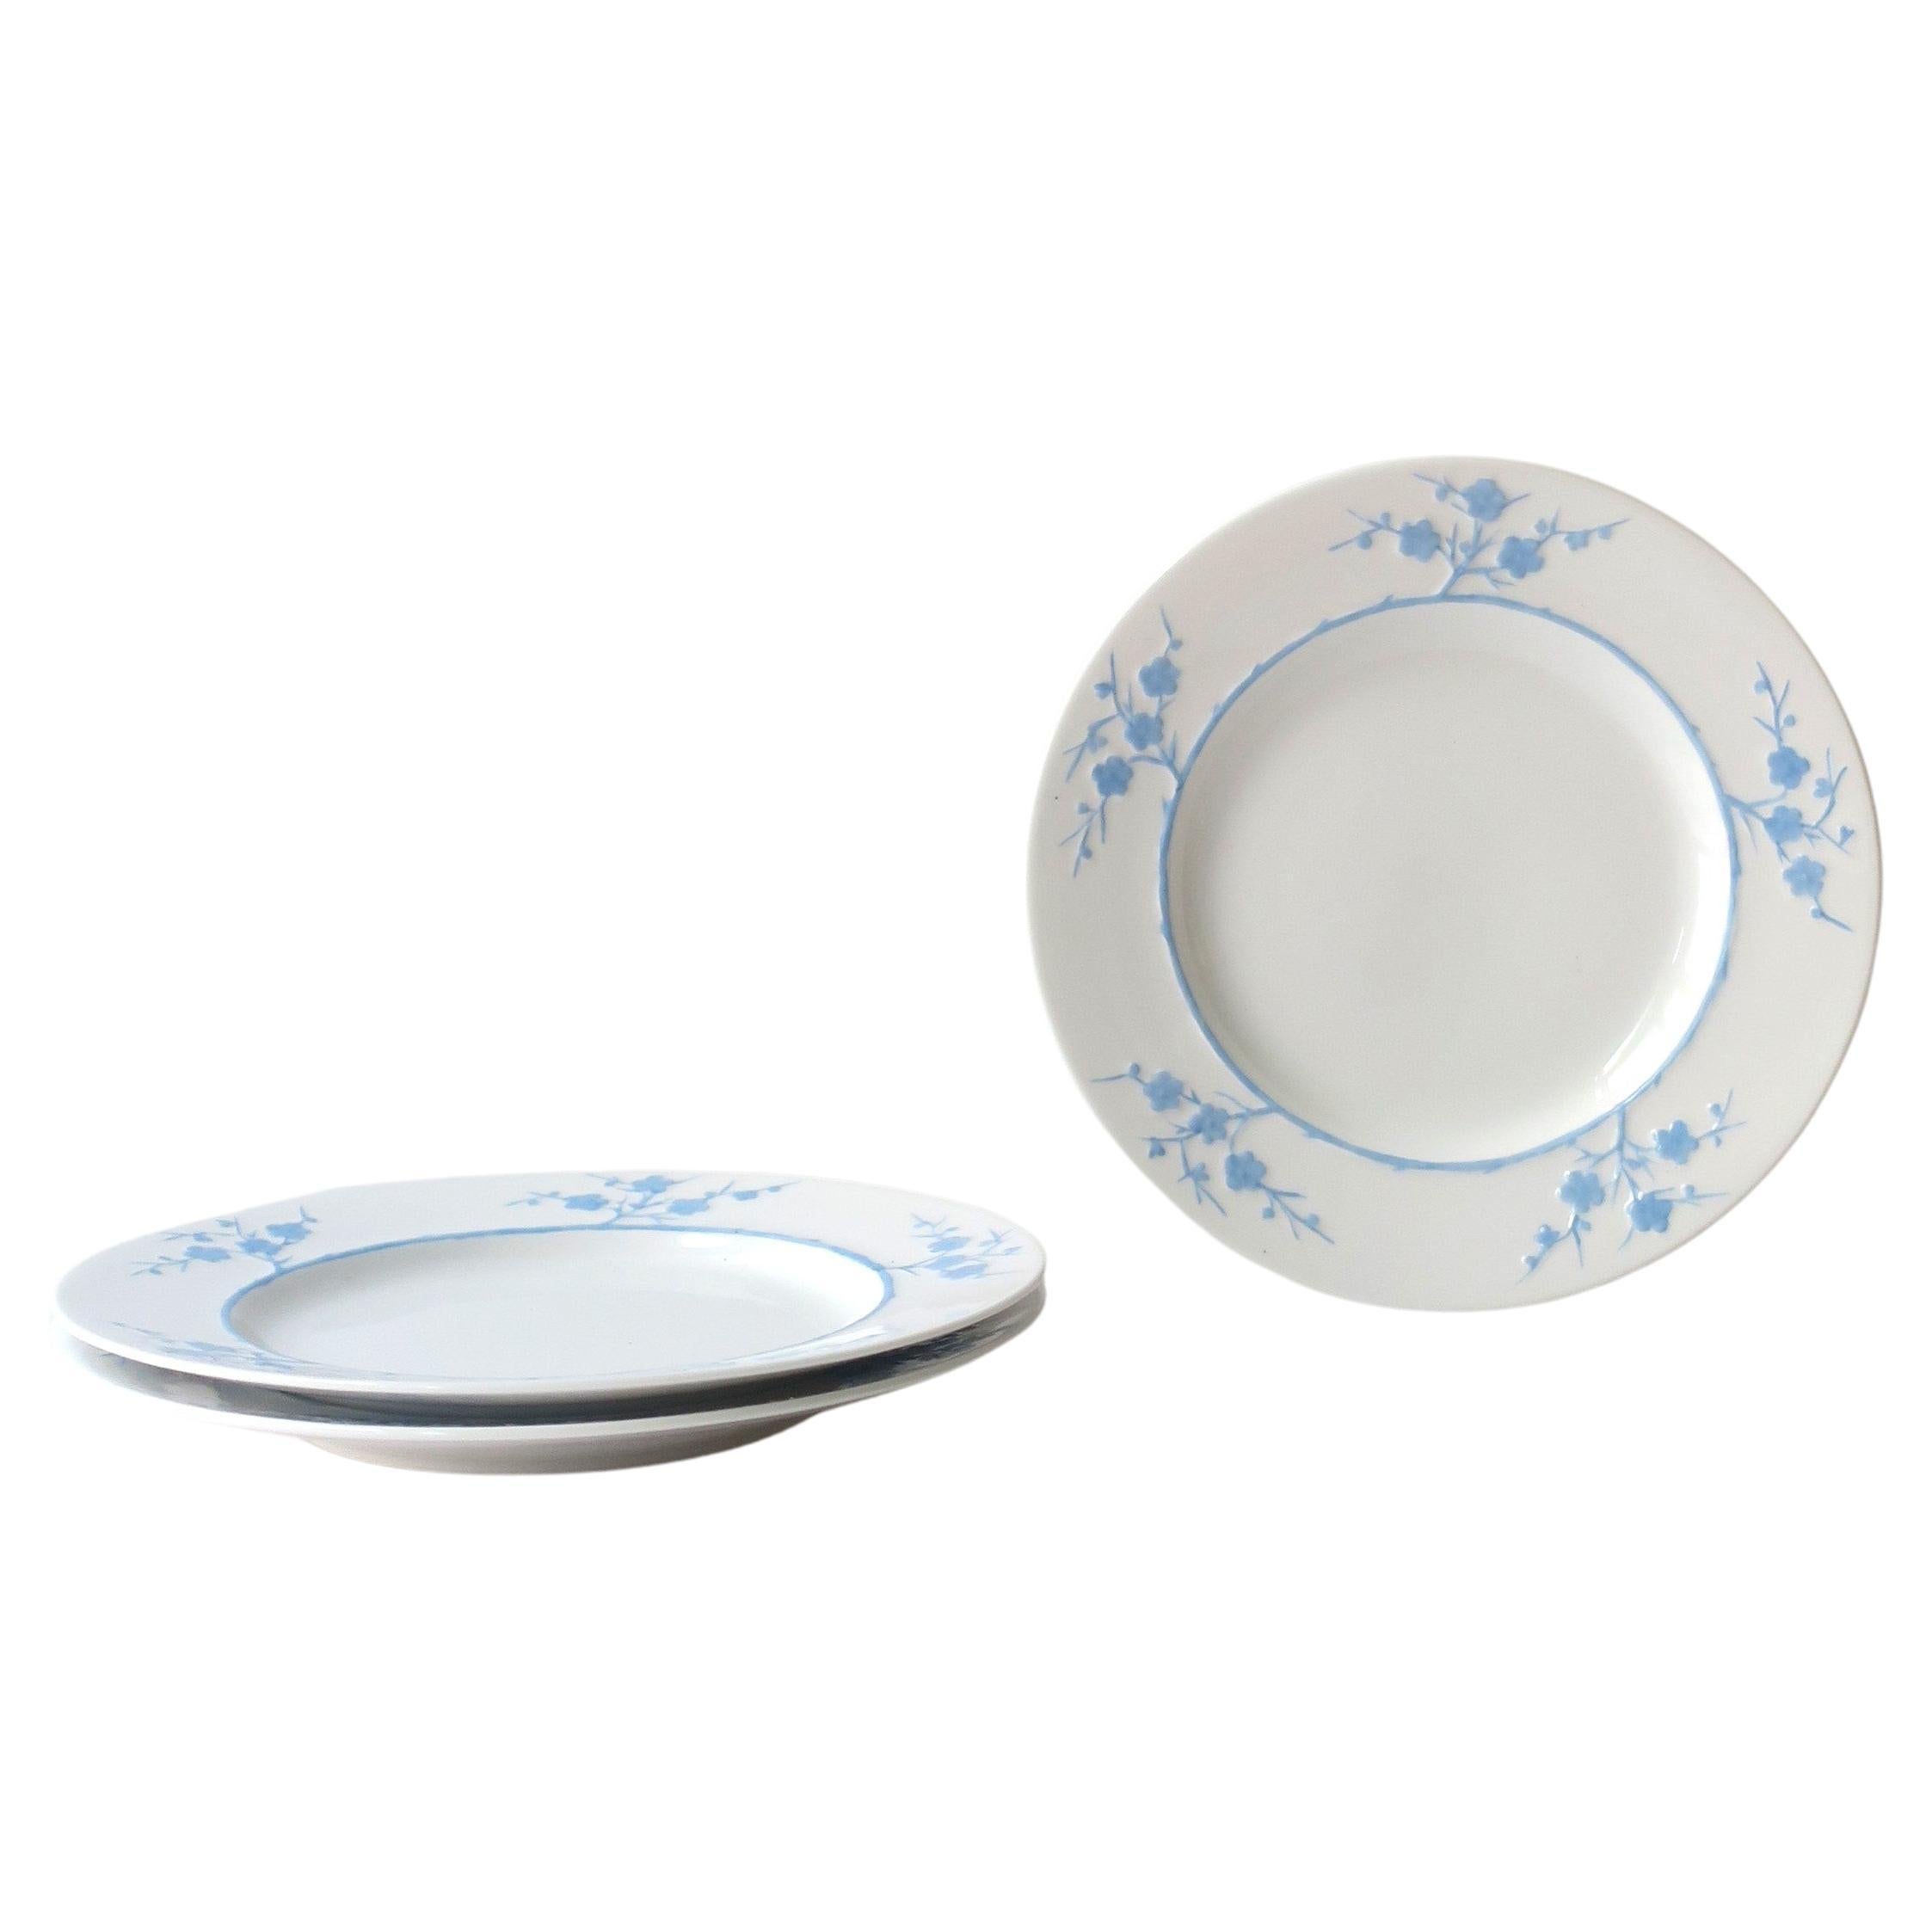 Assiettes en porcelaine Blanche de Chine Geisha blanches et bleues Spode Copelands, lot de 3